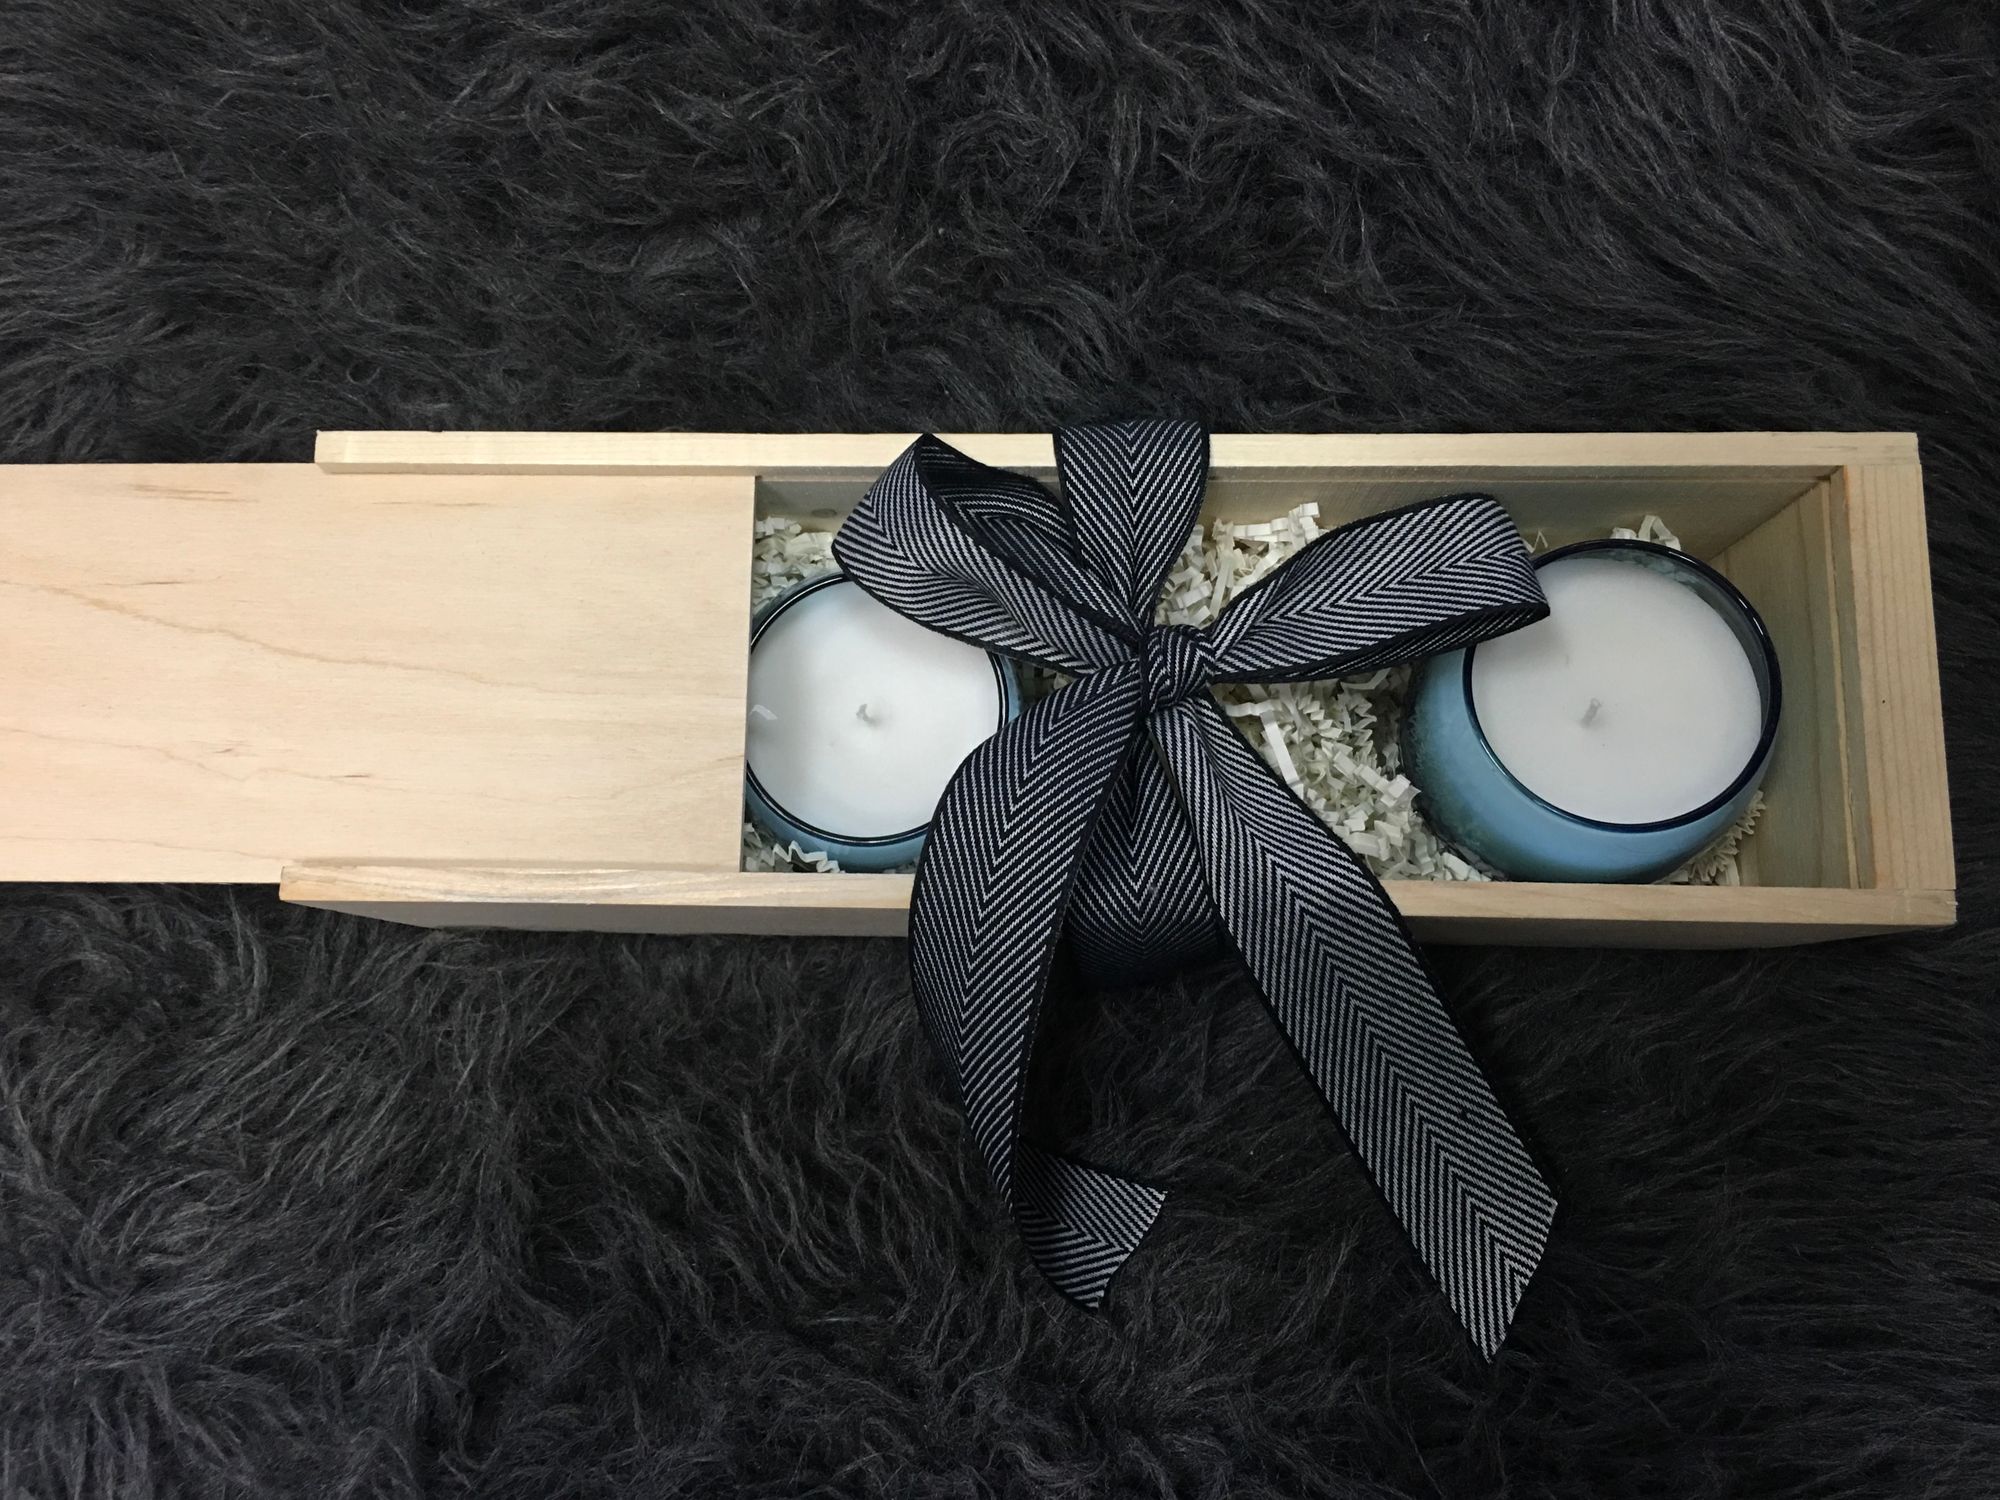 Malibu Candles in a Box